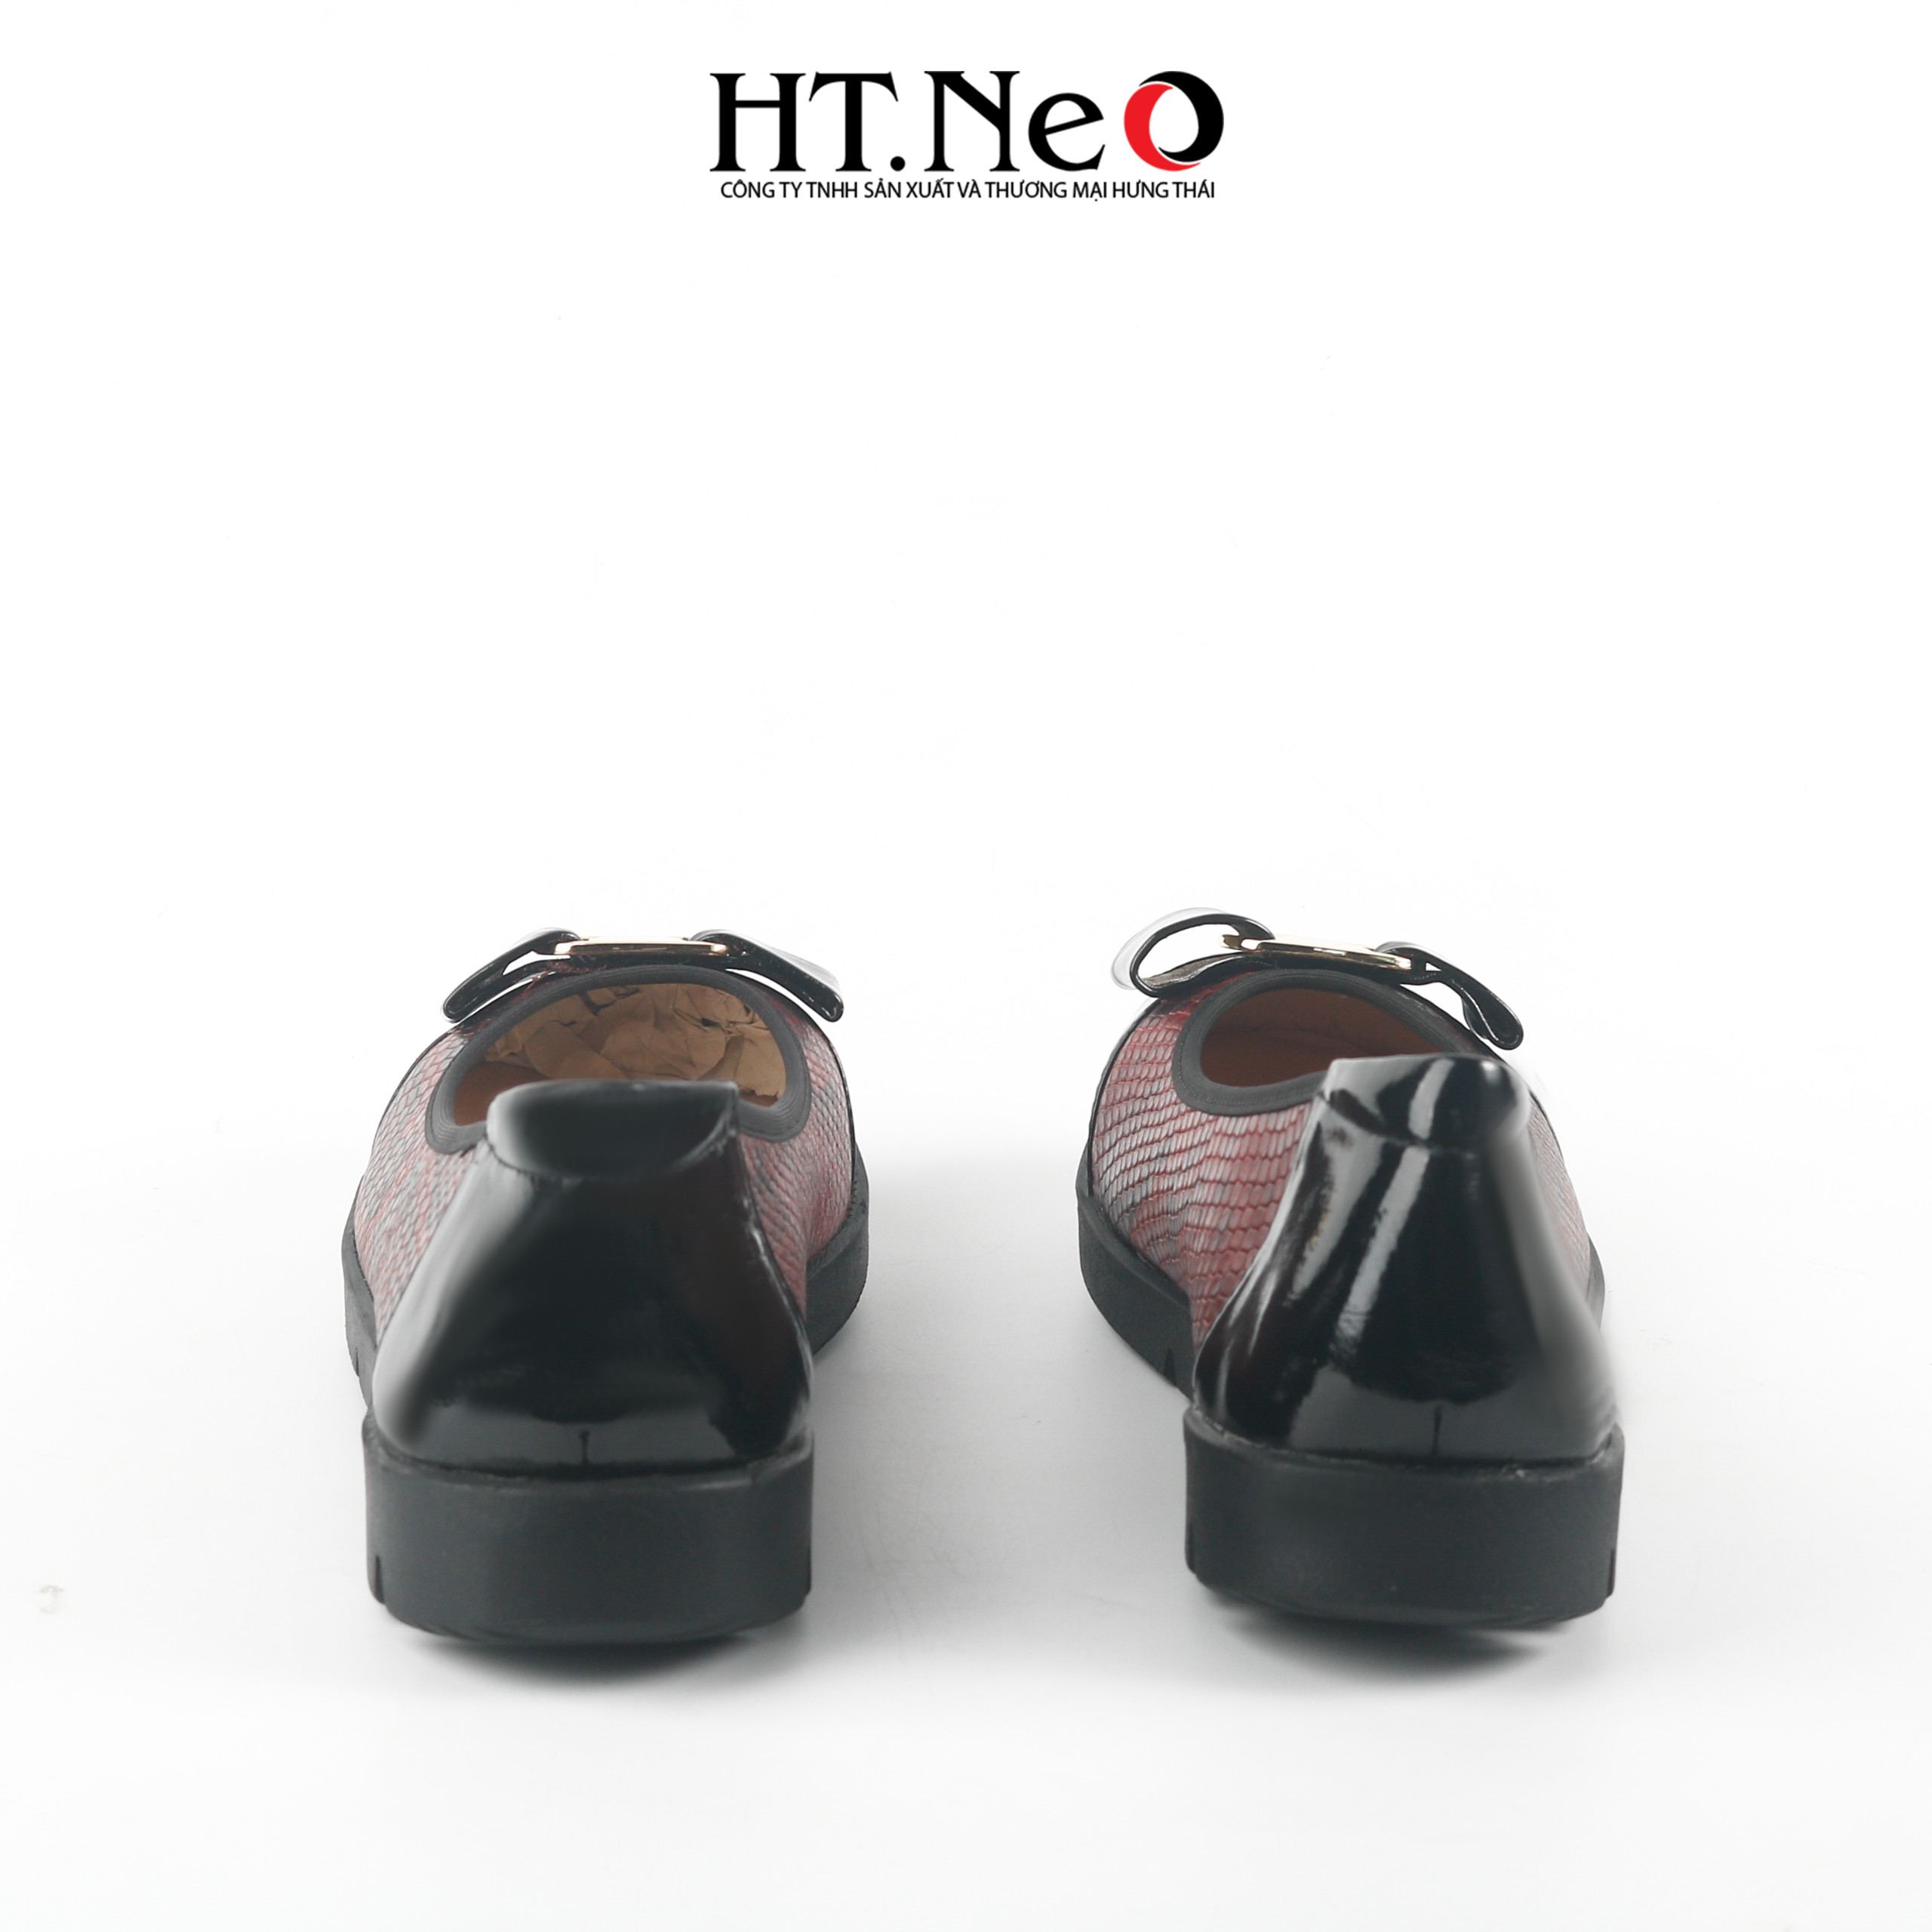 Giày bệt nữ, giày đế xuồng nữ 3p thiết kế đơn giản, đa dạng kiểu dáng, chất liệu da, đi êm chân, thoải mái, cực phù hợp với những chị em hay đi bộ nhiều NU250